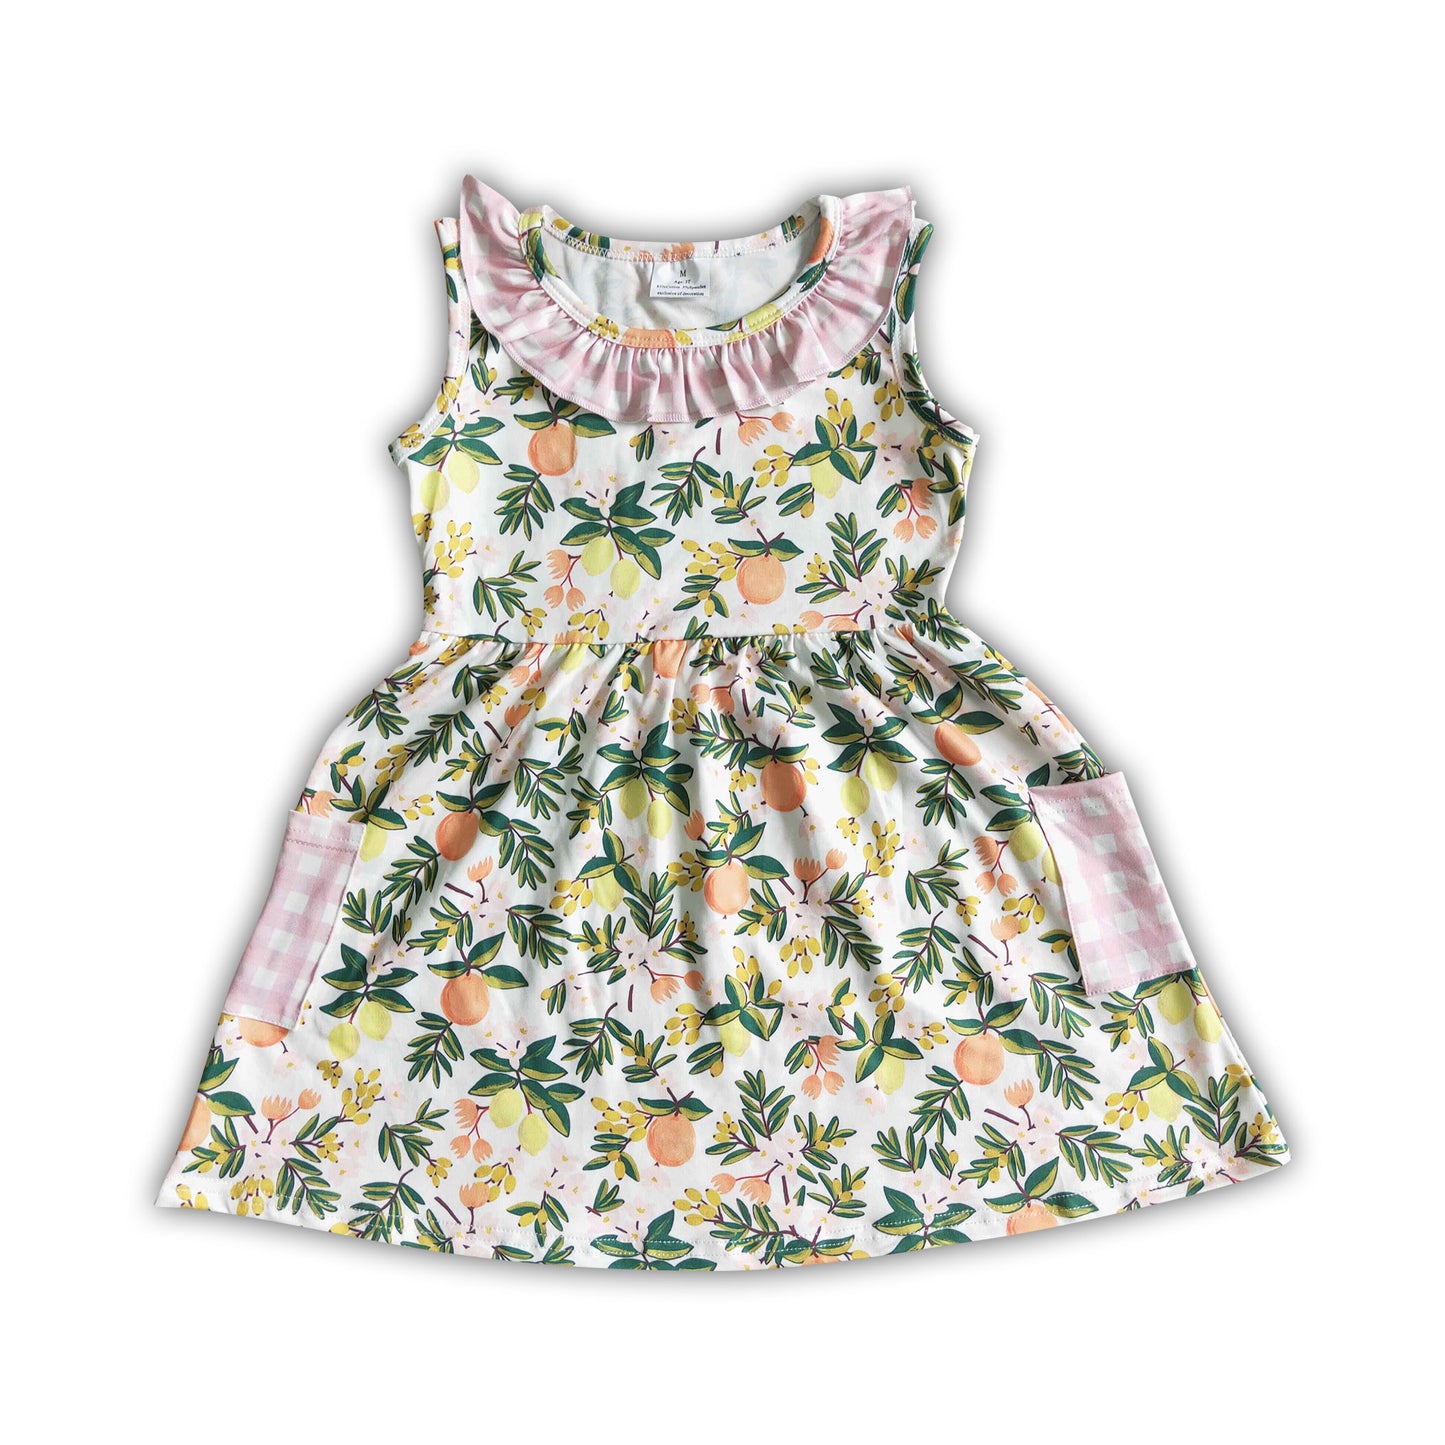 Peach lemon pocket baby girls summer dresses